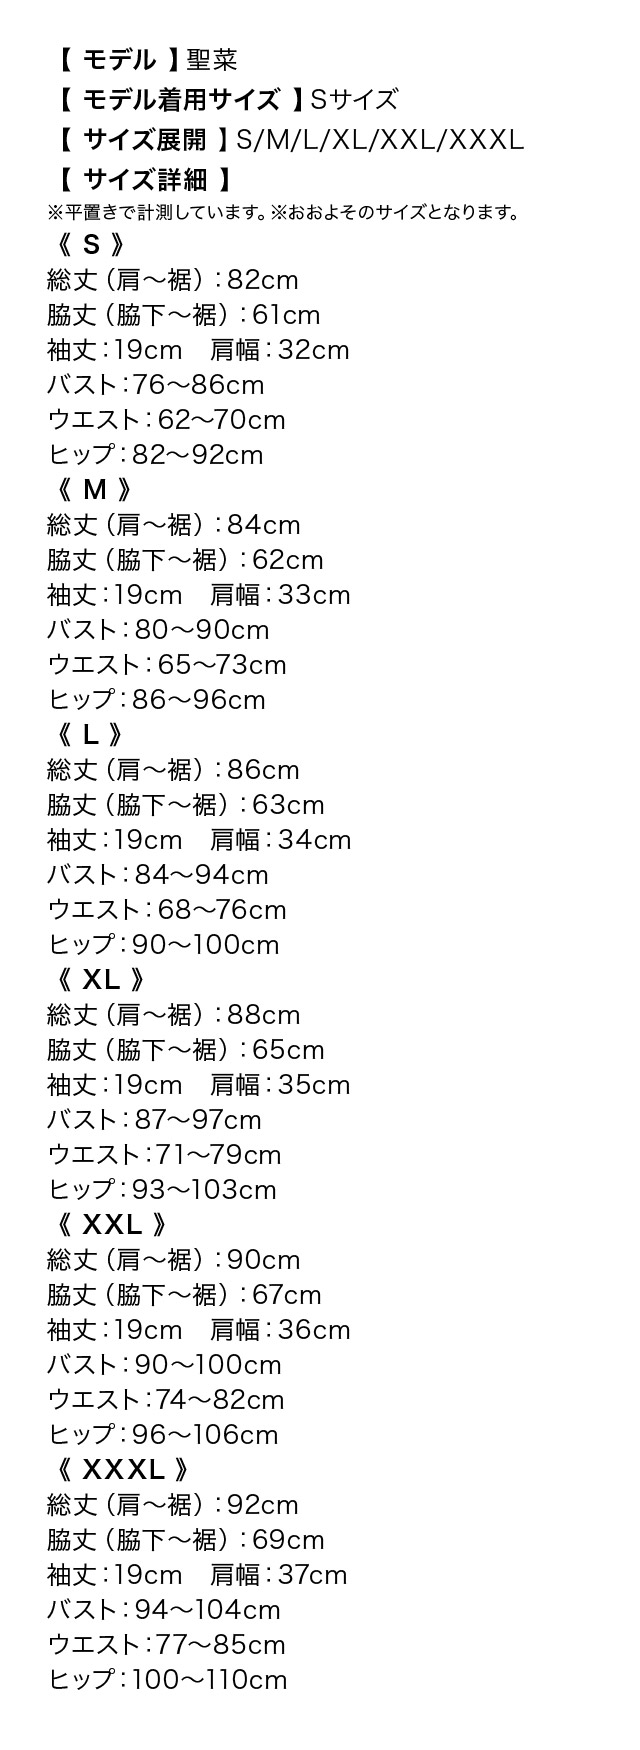 シースルーフレアスリーブタイトミニドレスのサイズ表